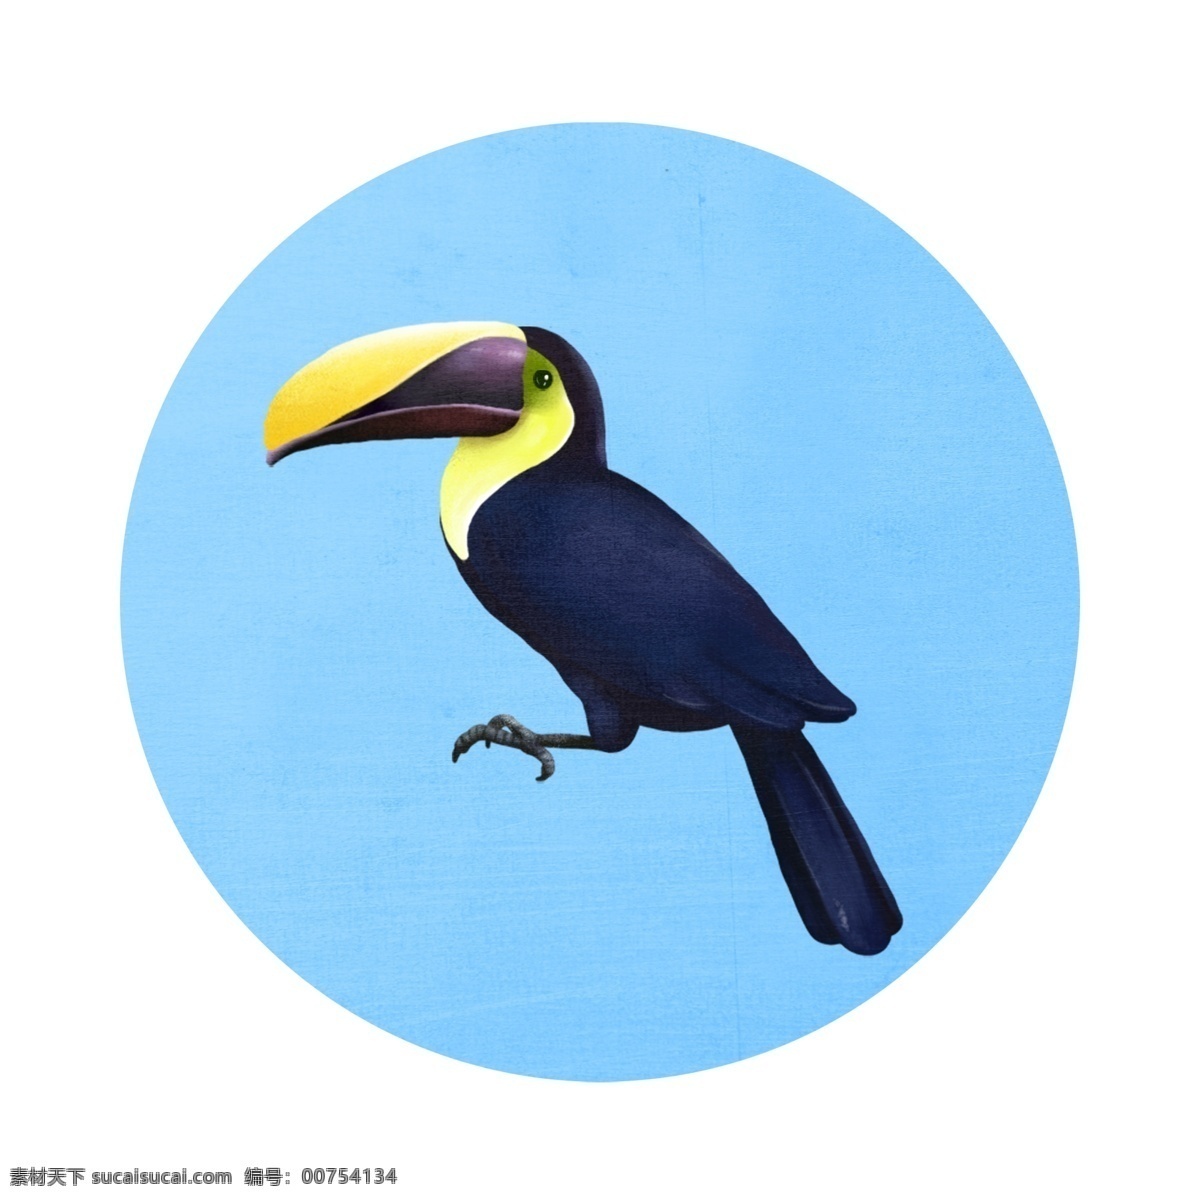 各种 风格 类型 鸟类 元素 插画 飞禽 节日 爱鸟日 巨嘴鸟 黑色 卡通 手绘